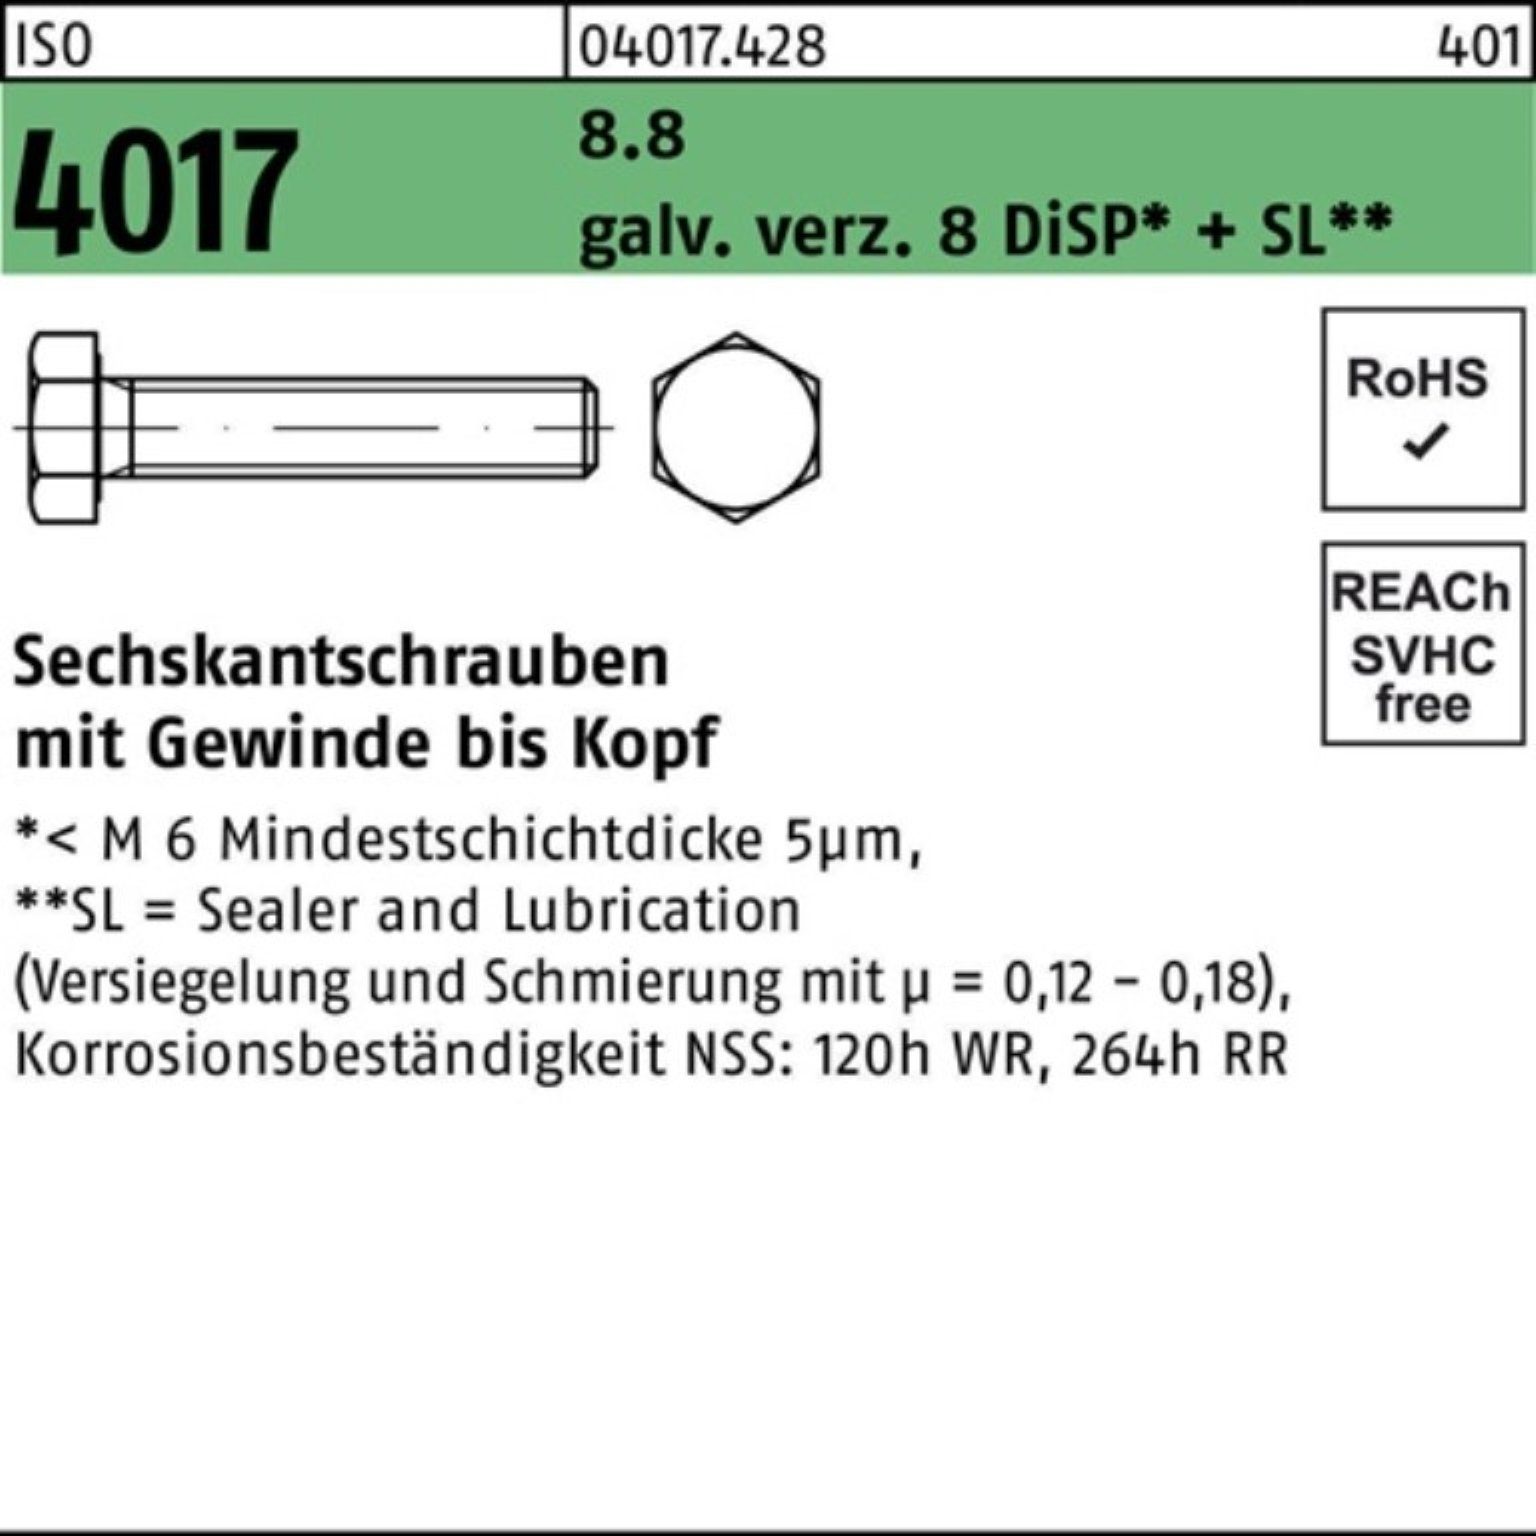 Sechskantschraube Sechskantschraube 90 galv.verz. VG 4017 M24x 8 8.8 Pack ISO Bufab DiSP 100er